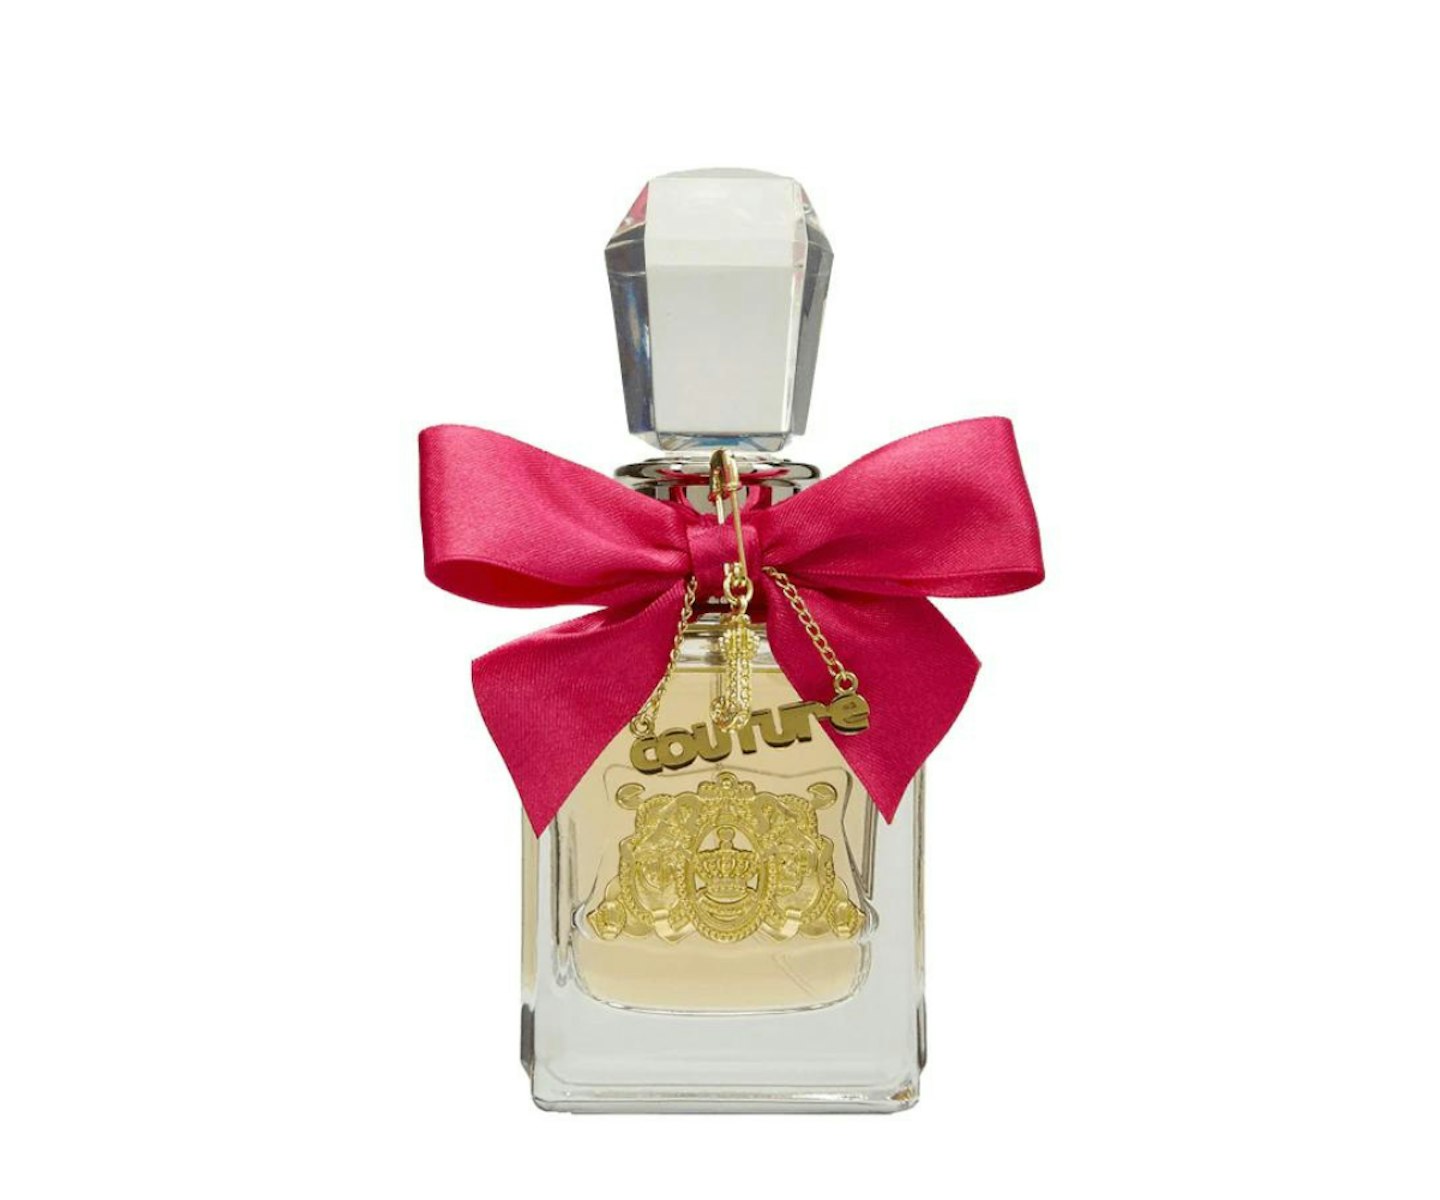 Juicy Couture Viva La Juicy Eau De Parfum Women's Perfume Spray 50ml